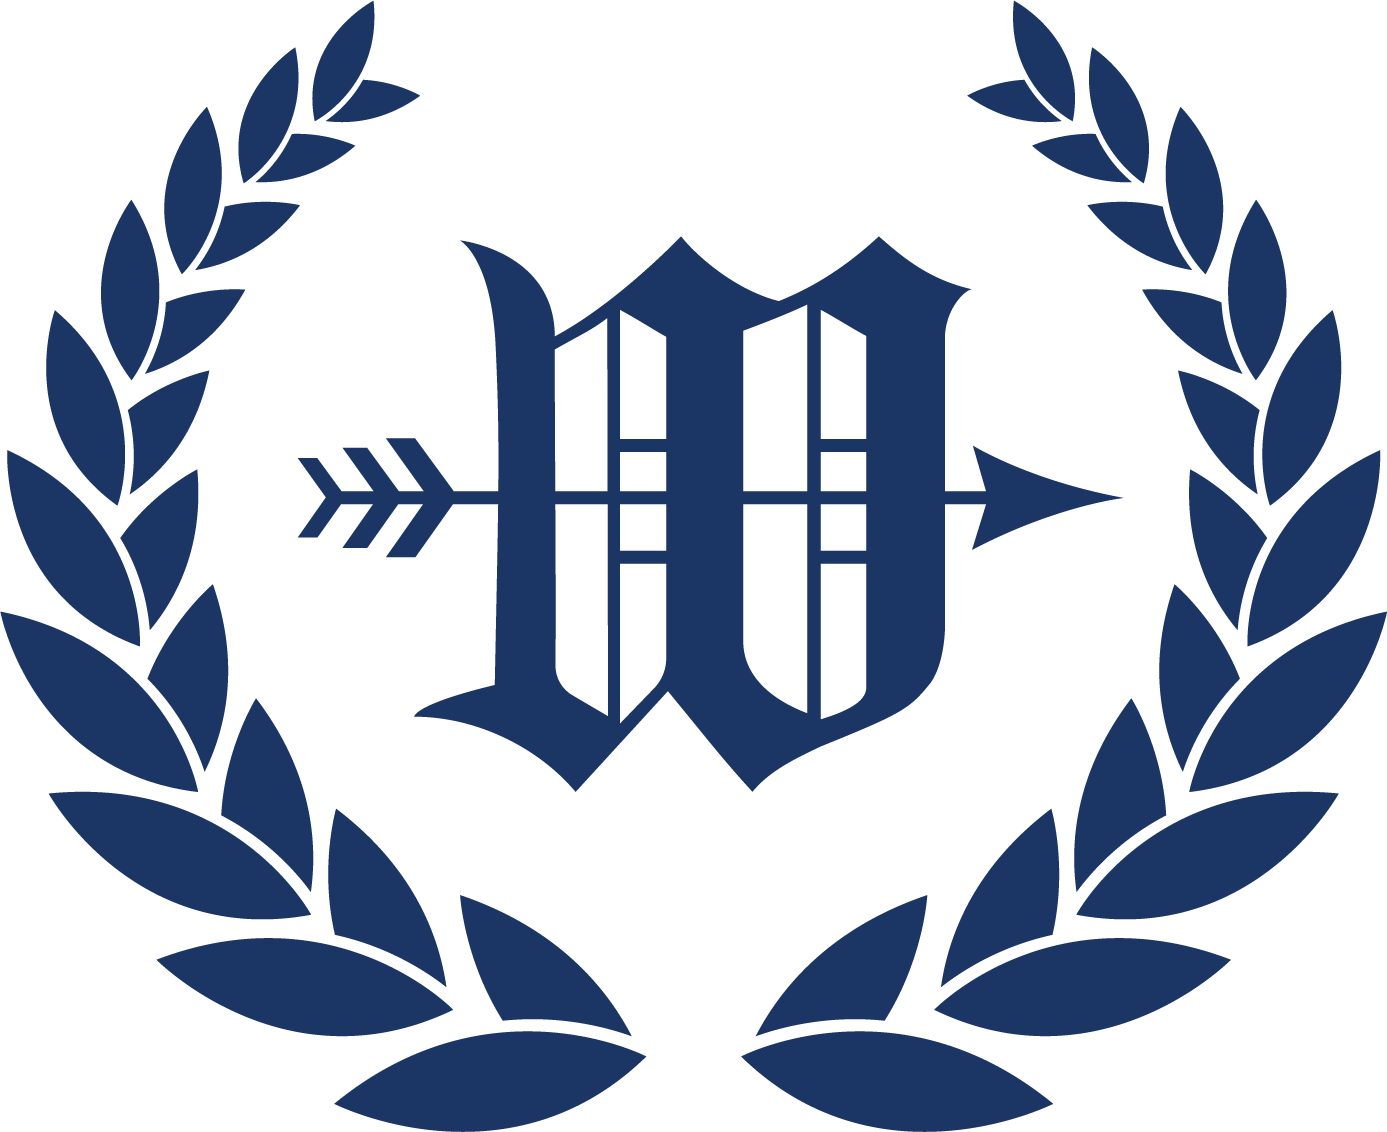 Westheimer Real Estate emblem